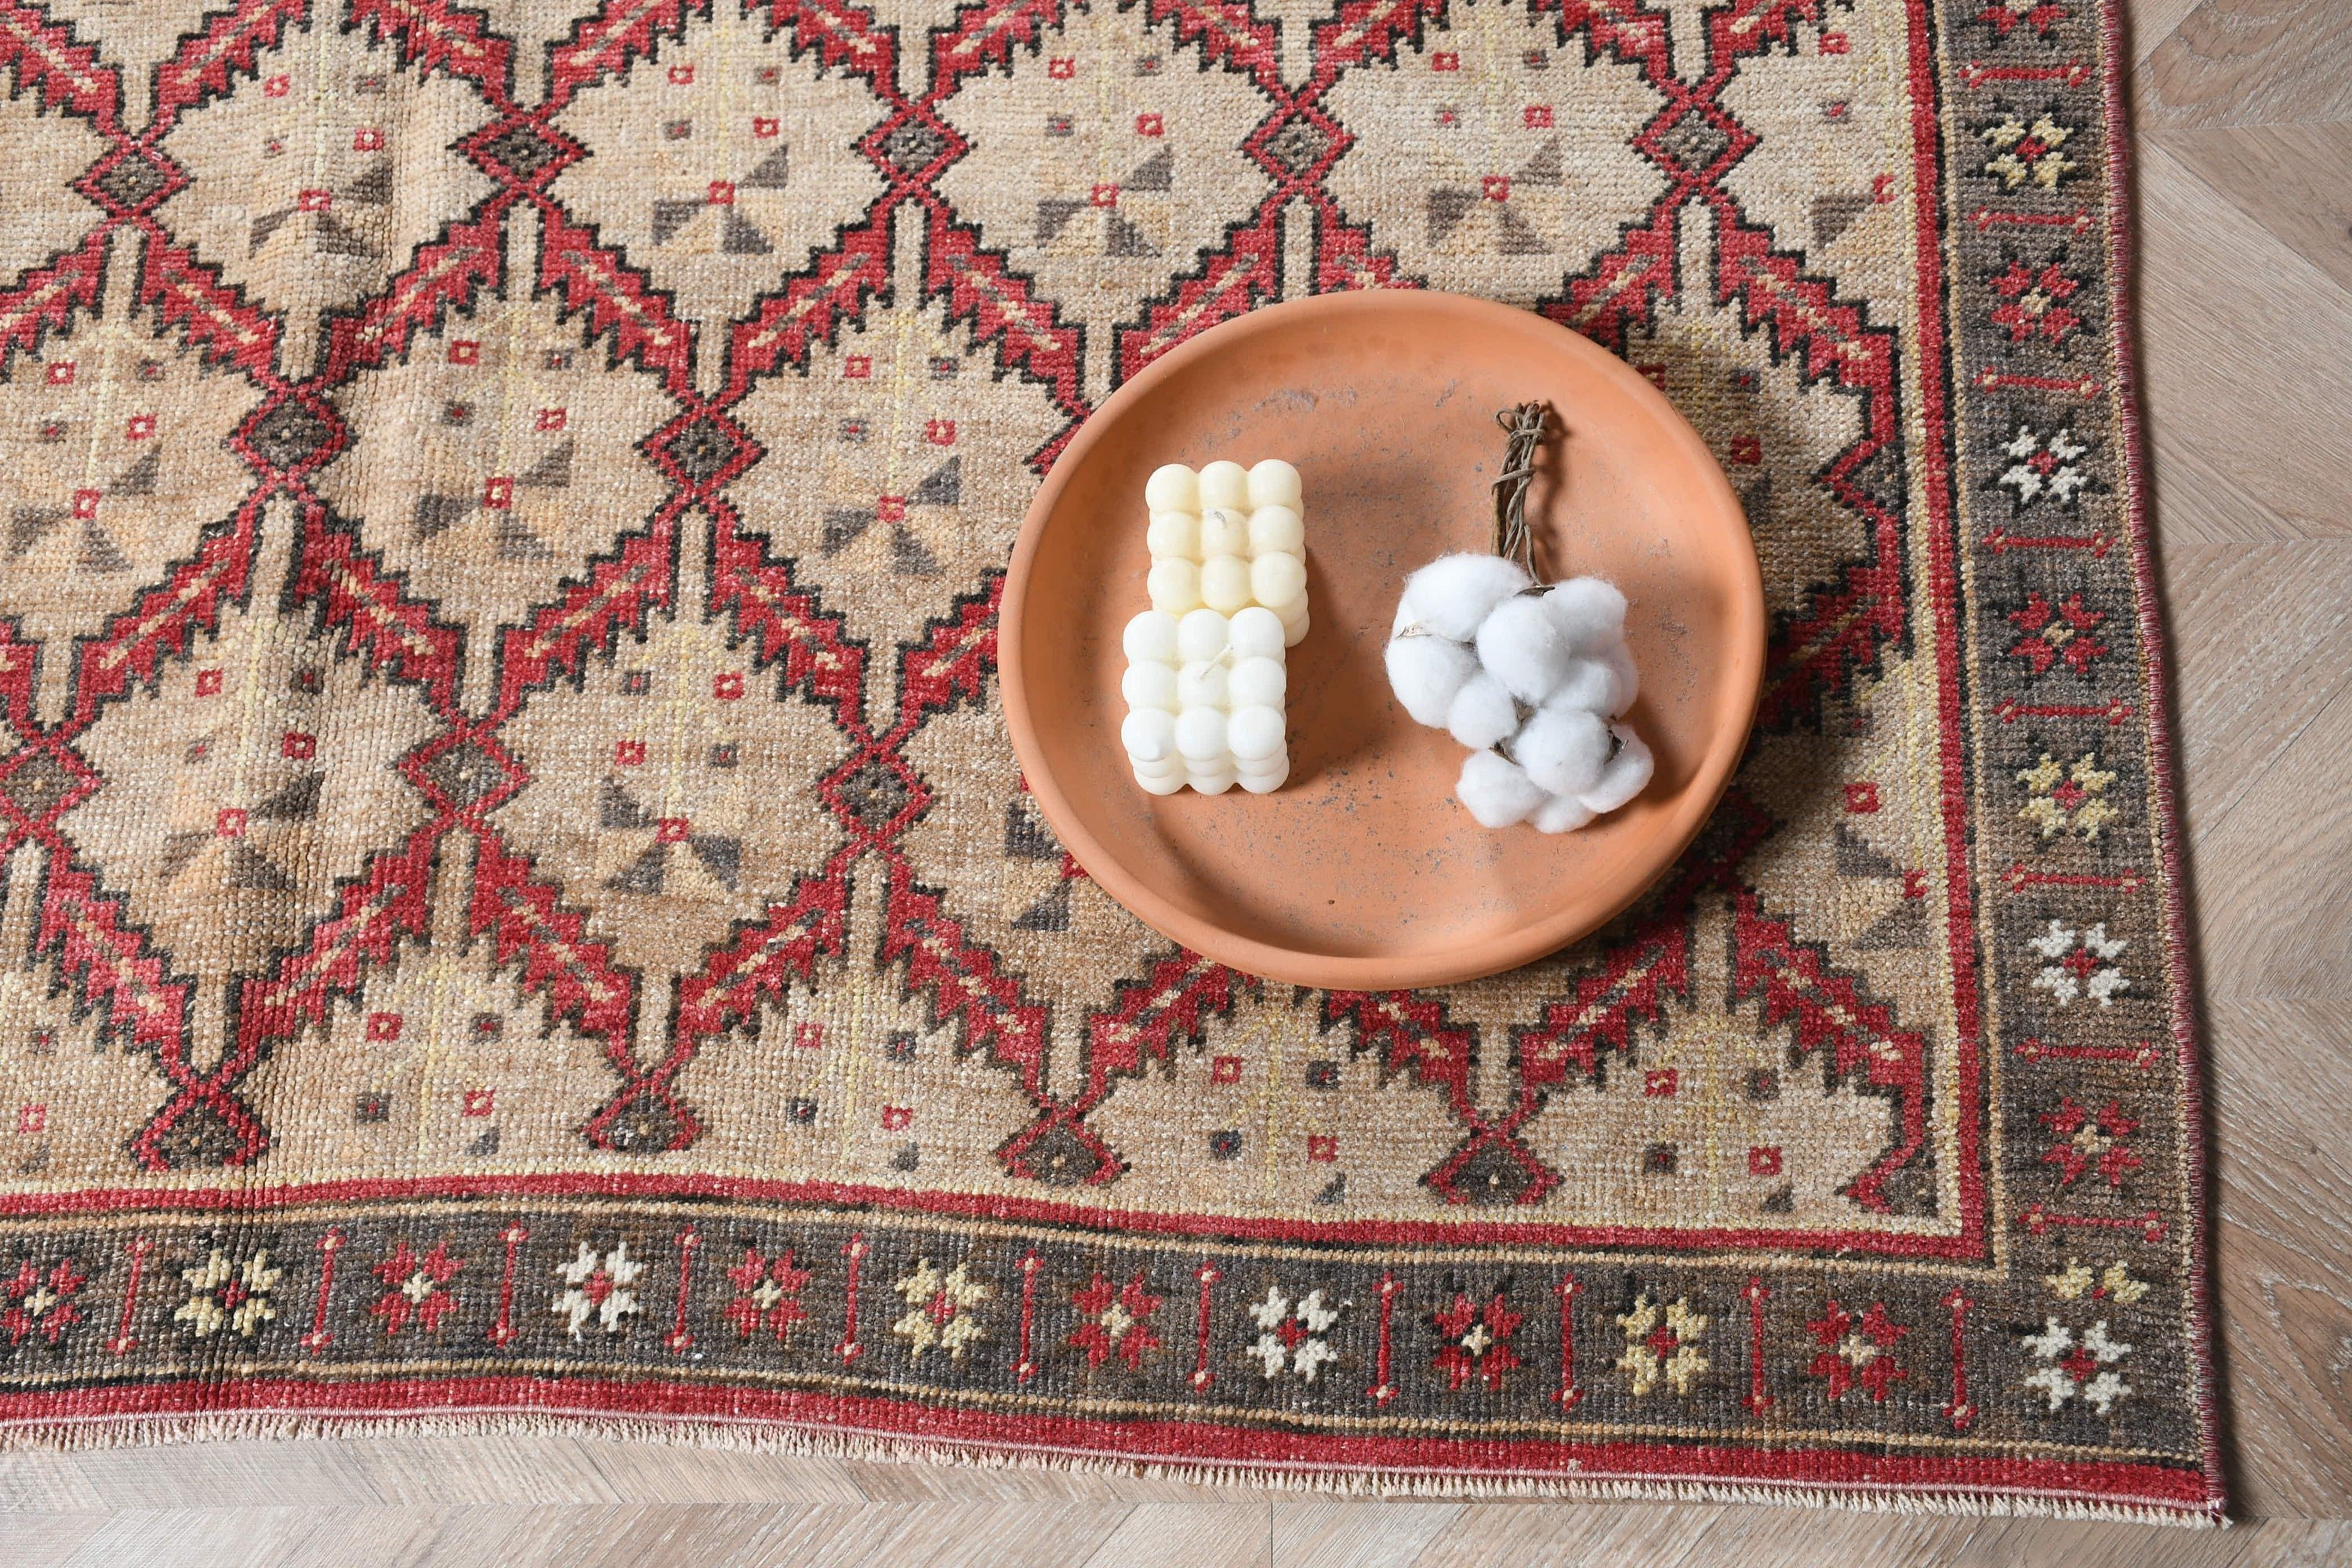 Bedroom Rug, Turkish Rugs, Oushak Rugs, Vintage Rug, Ethnic Rug, Living Room Rug, Beige  5x9.4 ft Large Rugs